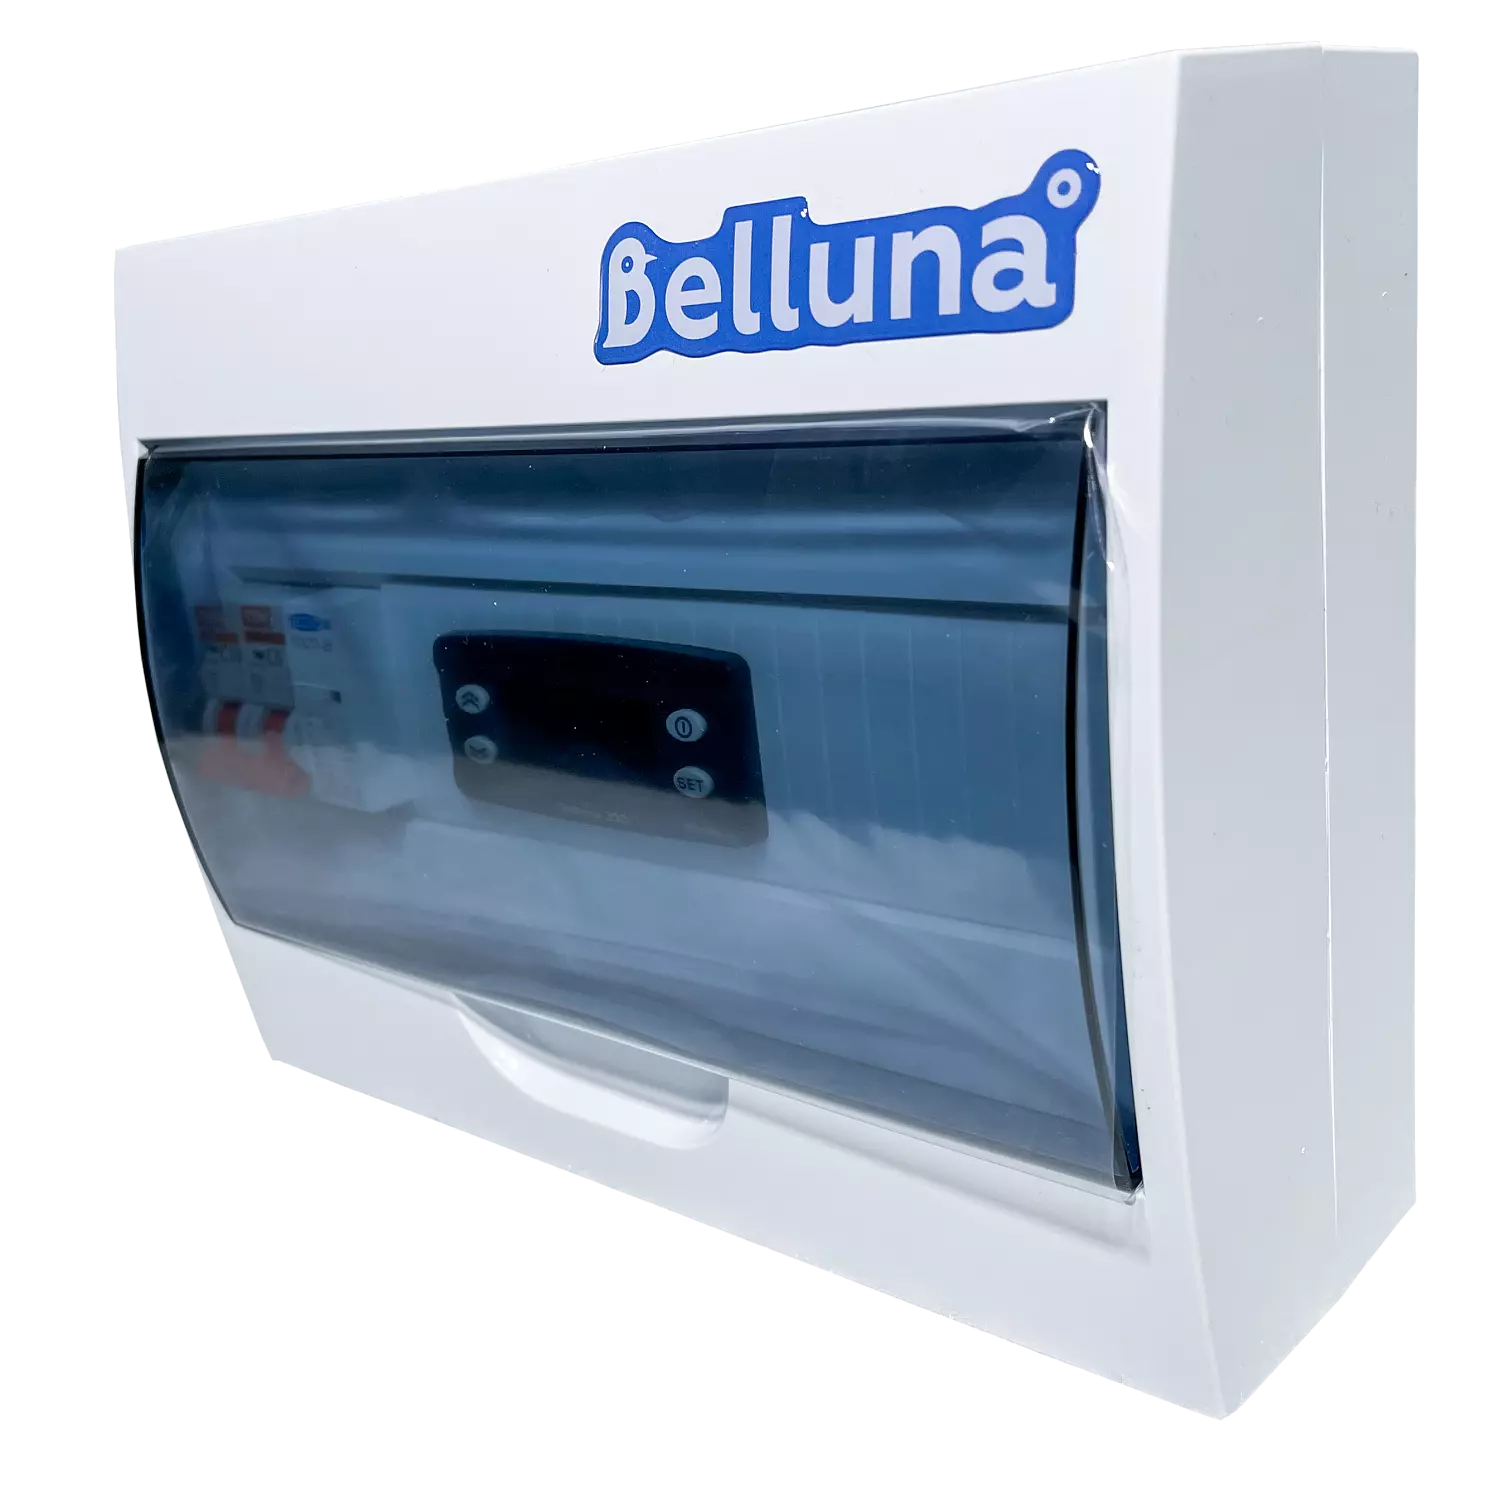 сплит-система Belluna U102-1 Липецк